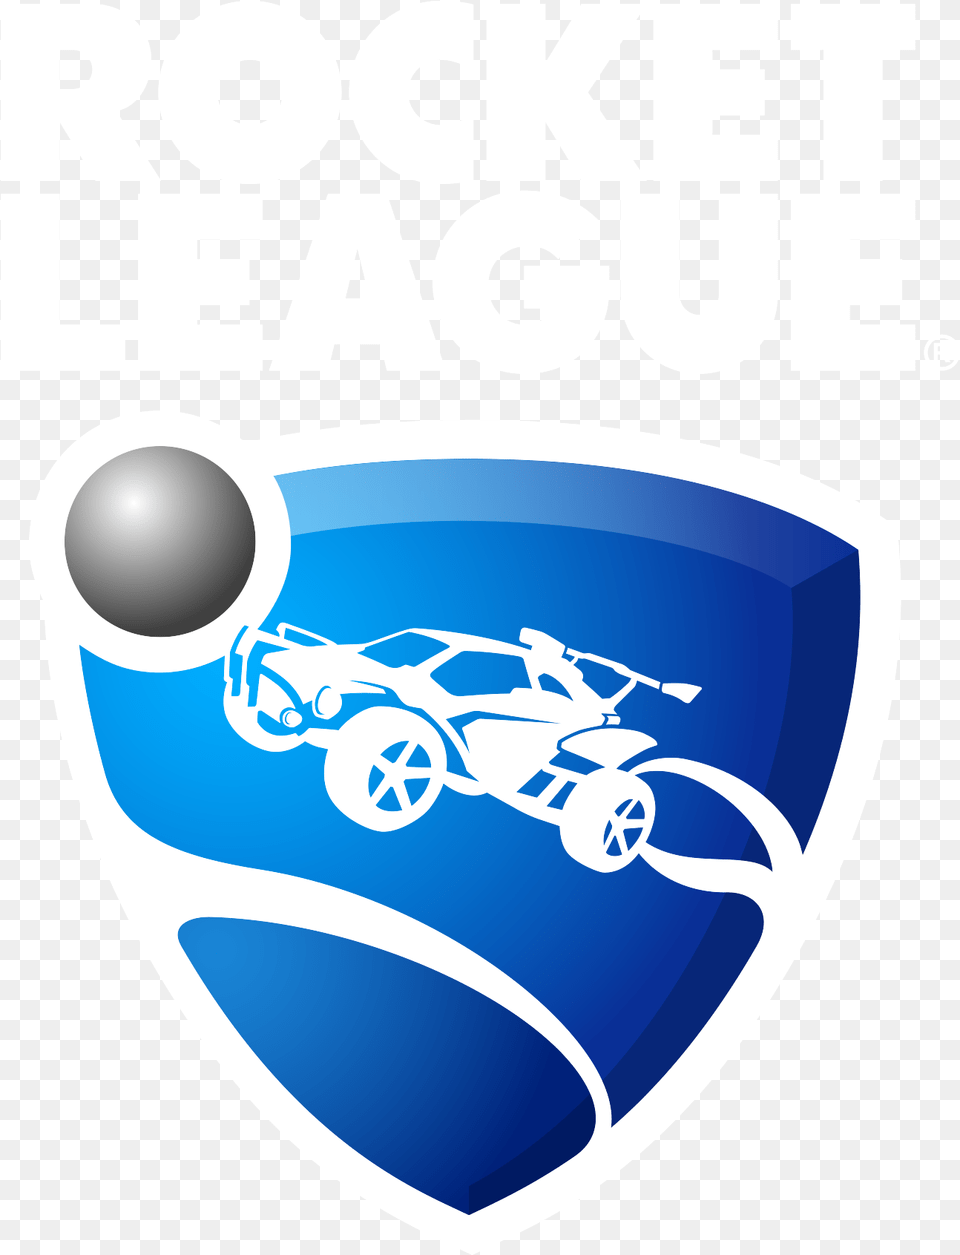 Rocket League Transparent Background Rocket League Logo Free Png Download